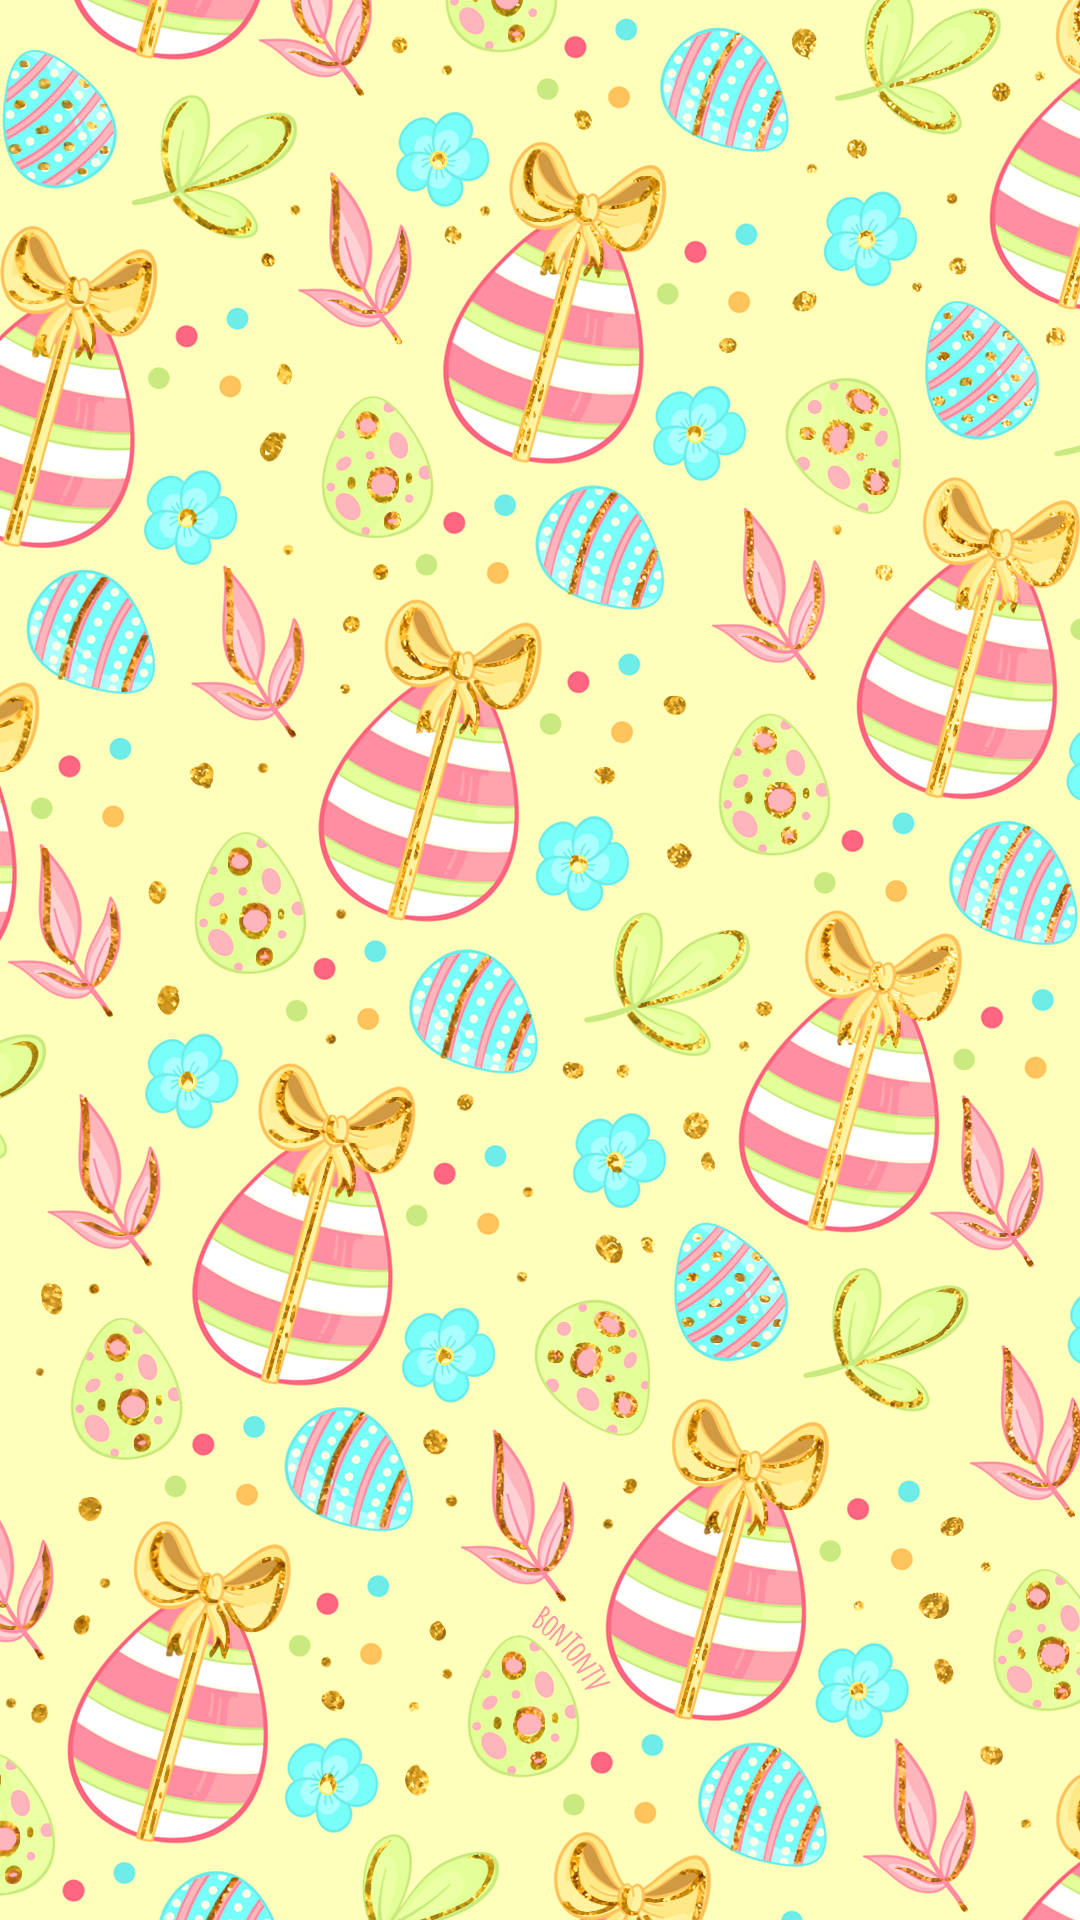 Feiernsie Ostern Mit Einem Ostertelefon! Wallpaper